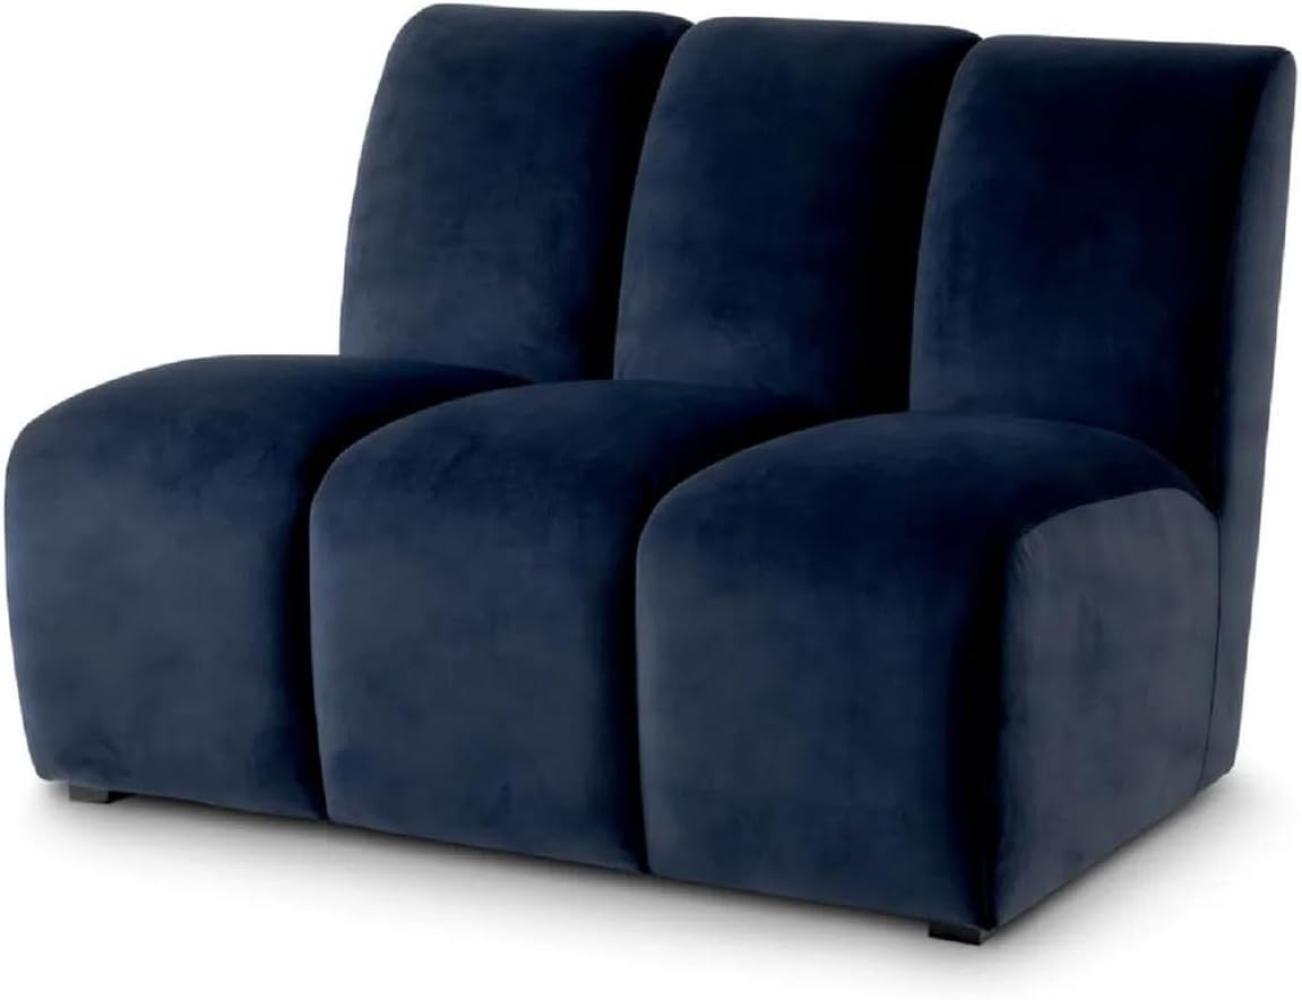 Casa Padrino Luxus Samt Sofa Element Mitternachtsblau / Schwarz 108,5 x 94,5 x H. 83 cm - Erweiterbares Wohnzimmer Sofa - Wohnzimmer Möbel - Luxus Möbel Bild 1